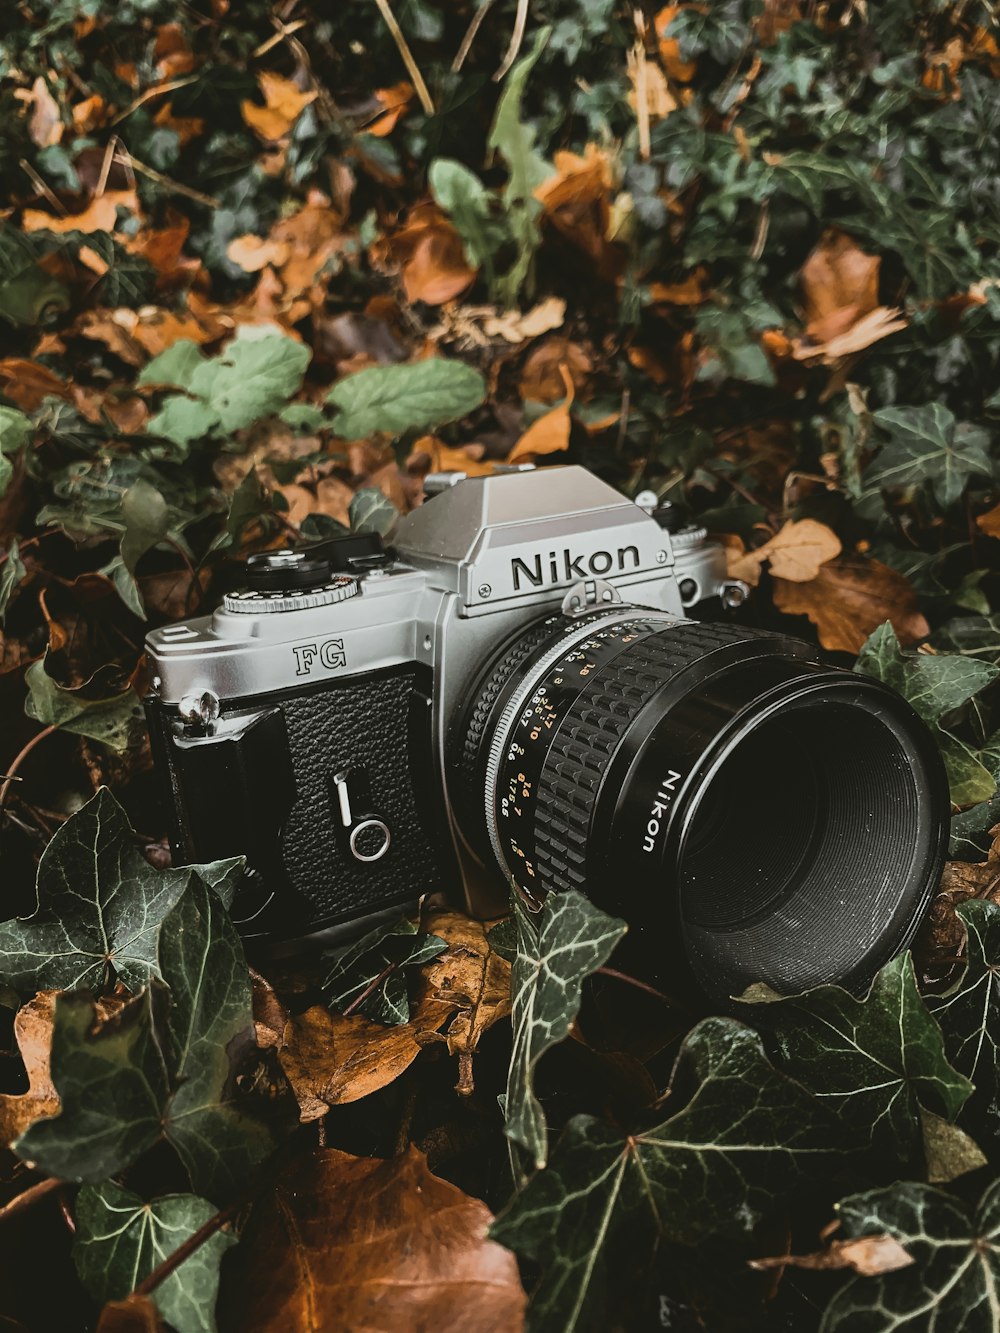 Fotocamera reflex Nikon grigia e nera